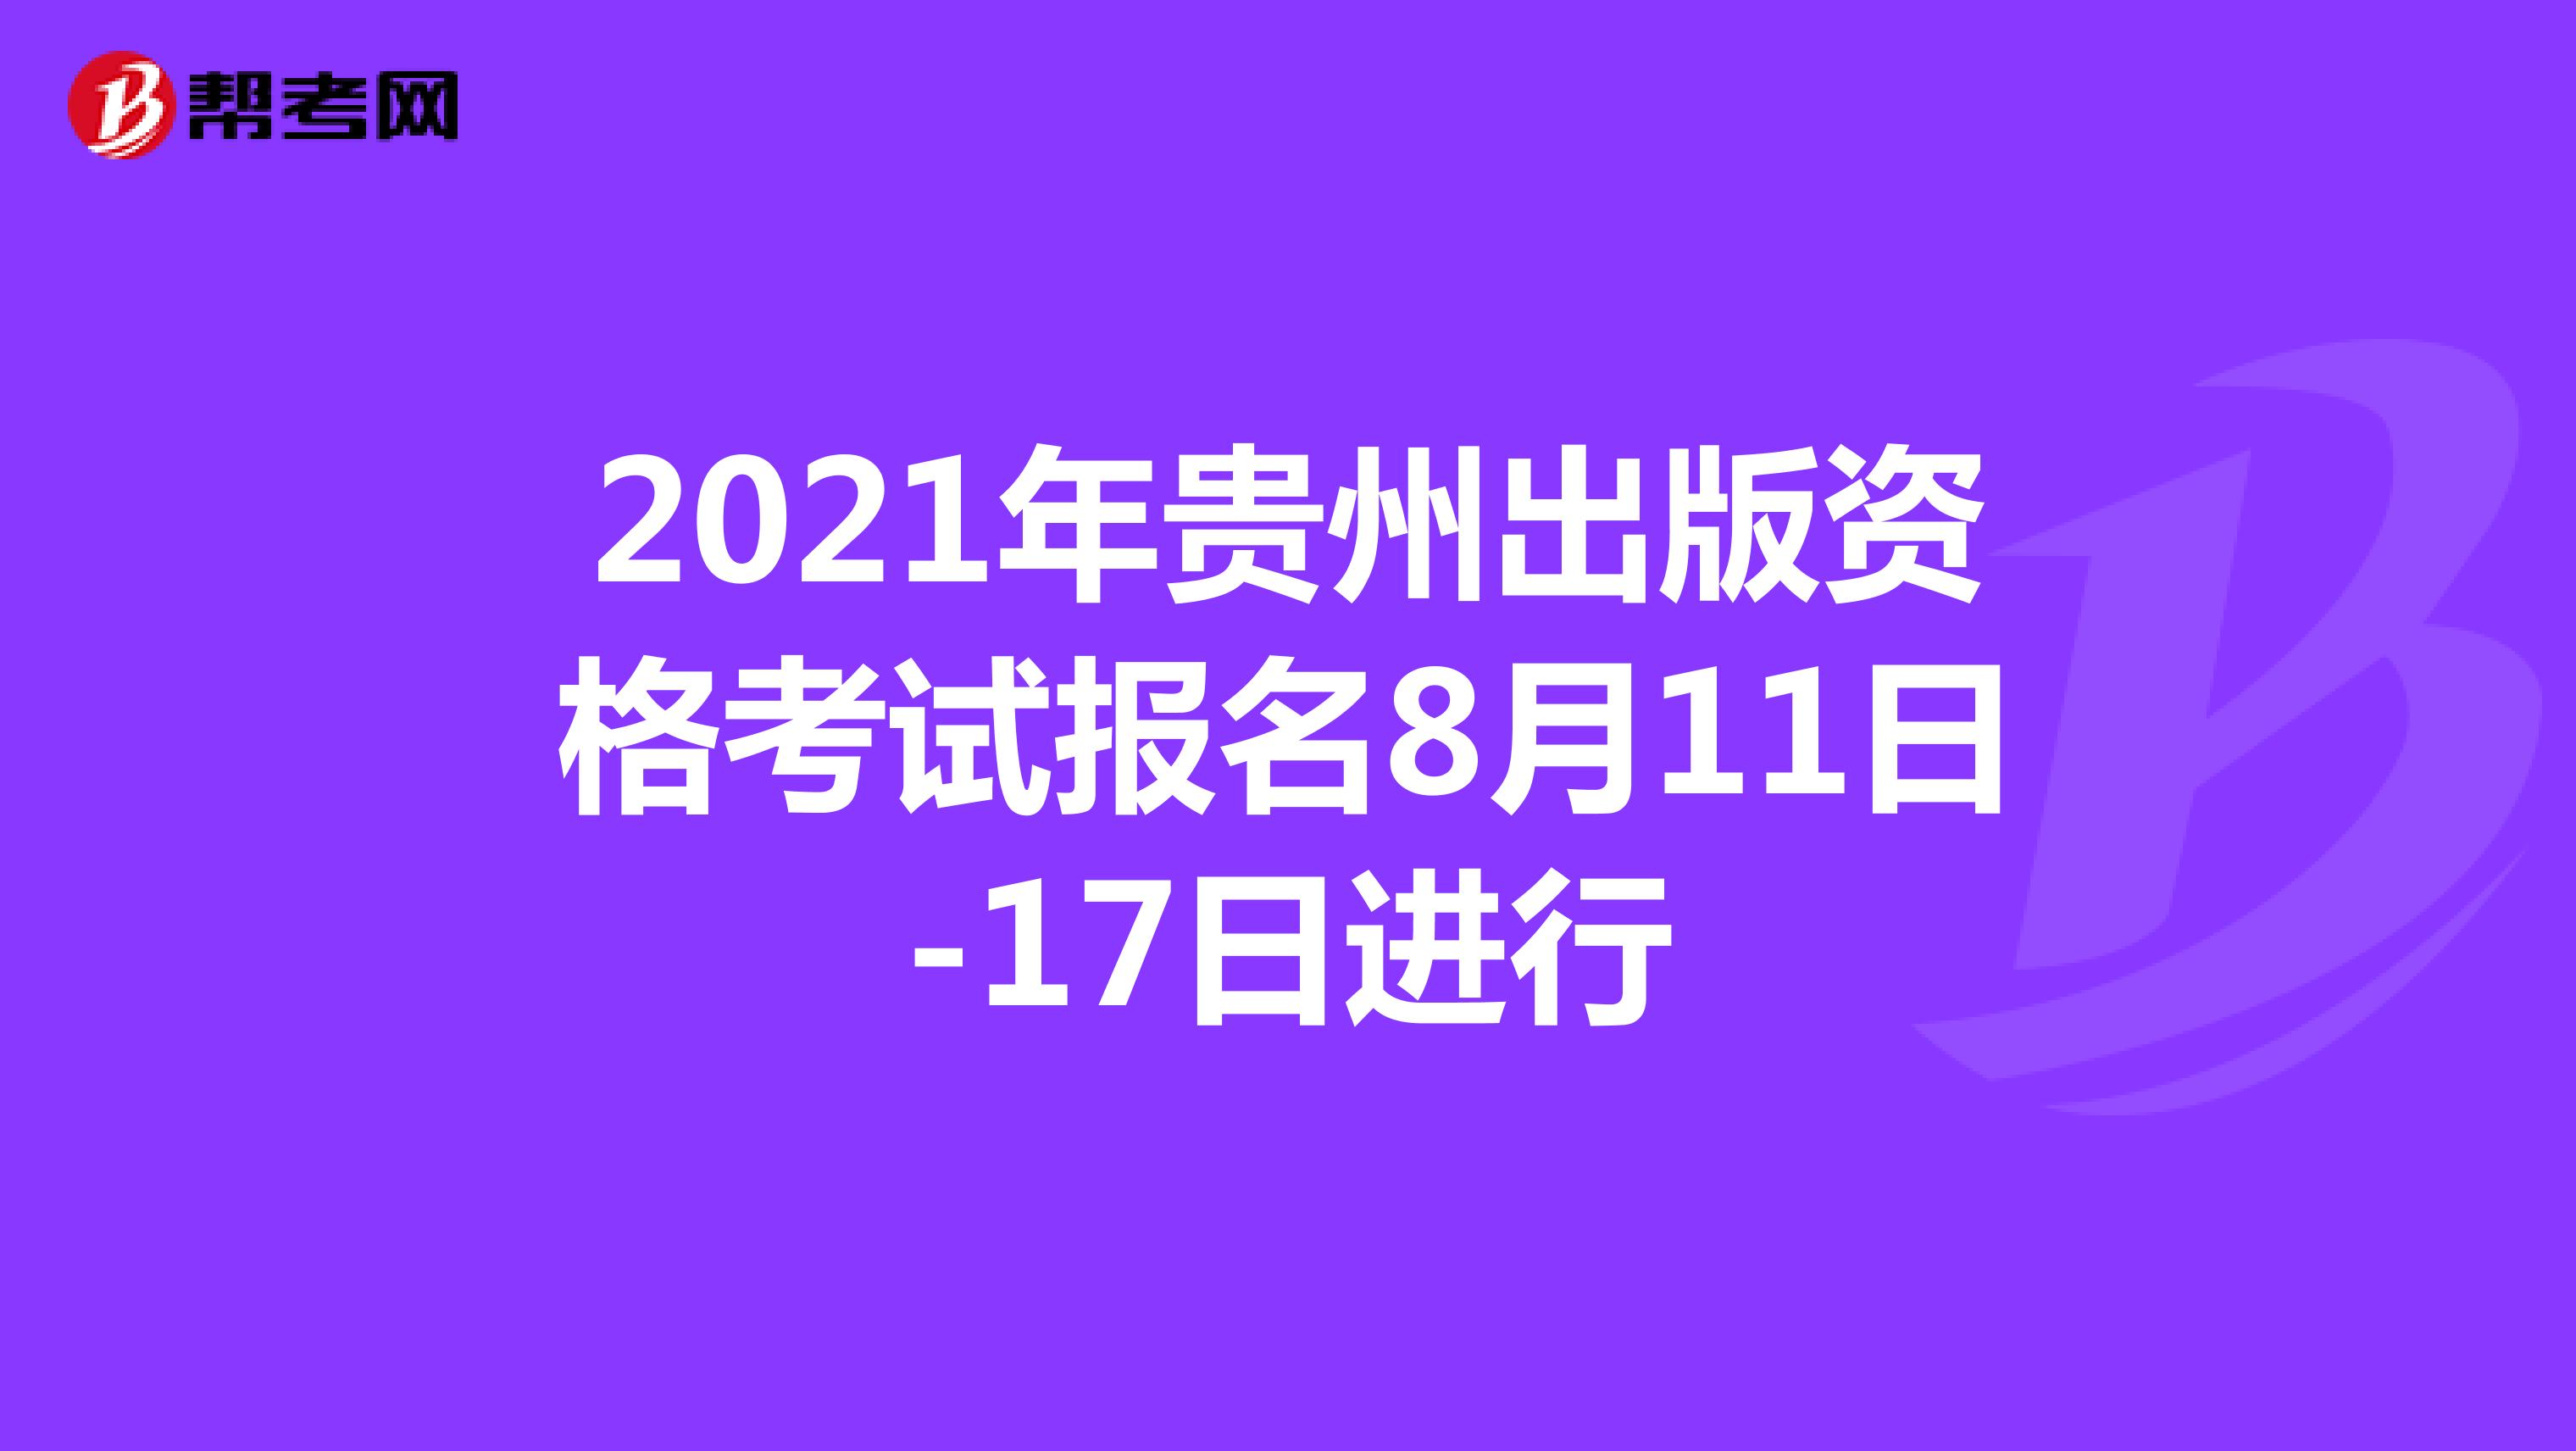 2021年贵州出版资格考试报名8月11日-17日进行